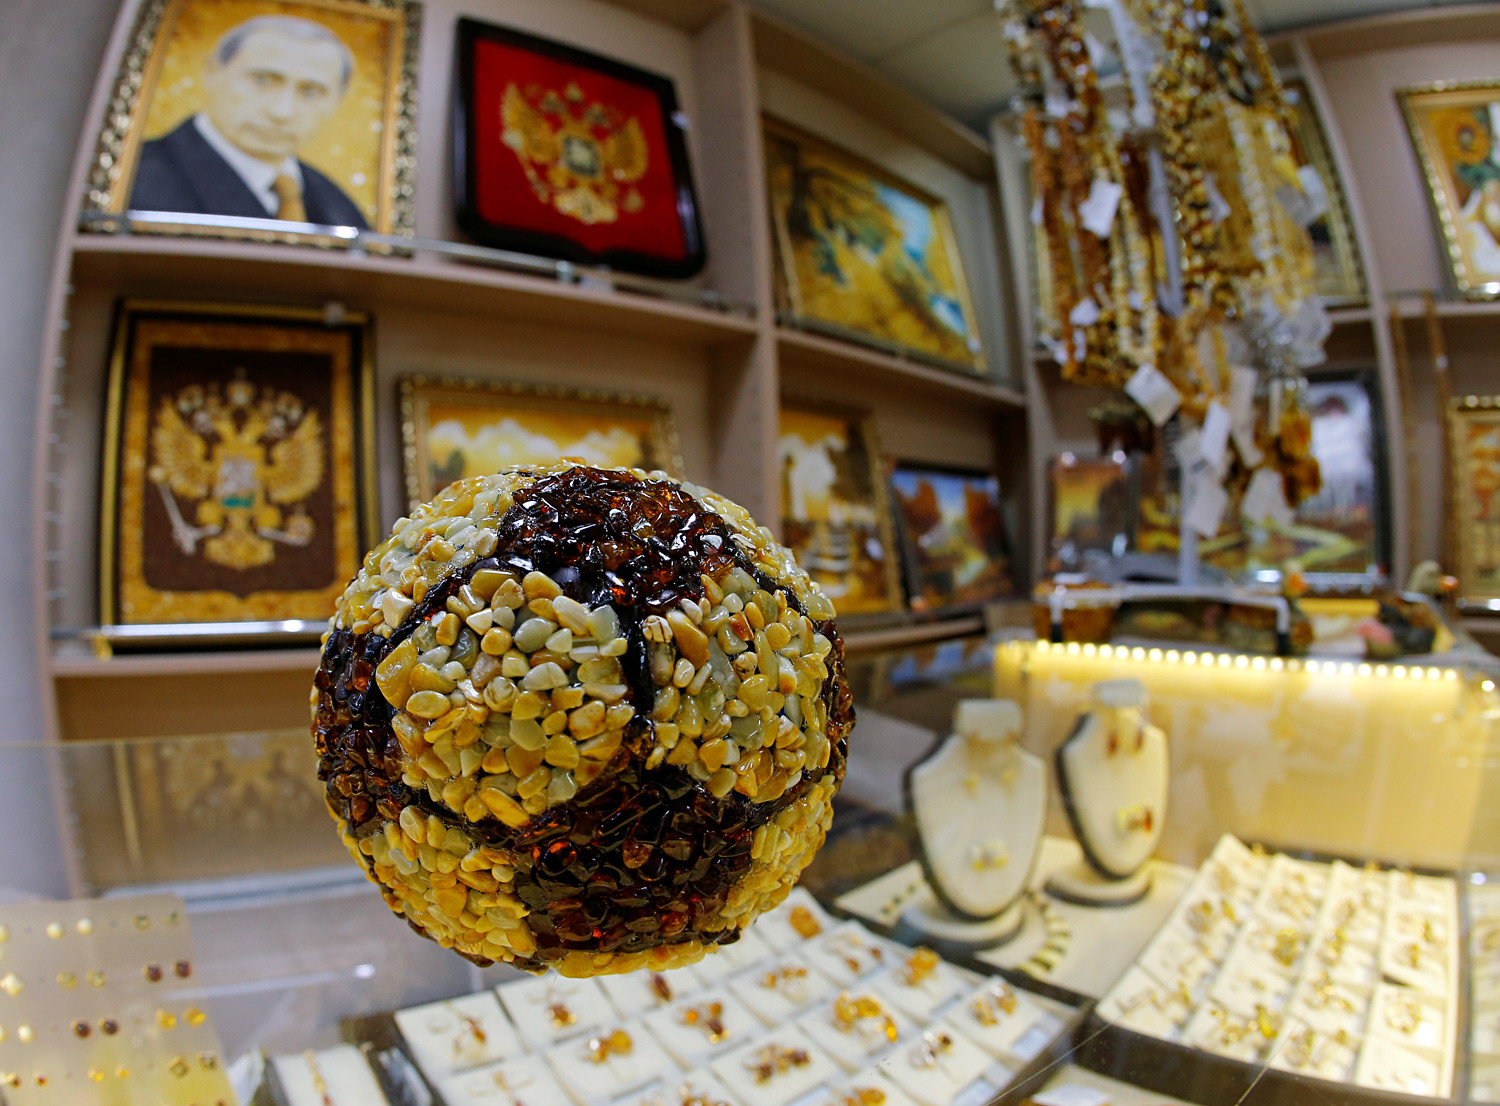 Pallone da calcio (ebbene sì, c’è un ritratto di Vladimir Putin sul muro, anch’esso realizzato in ambra)

